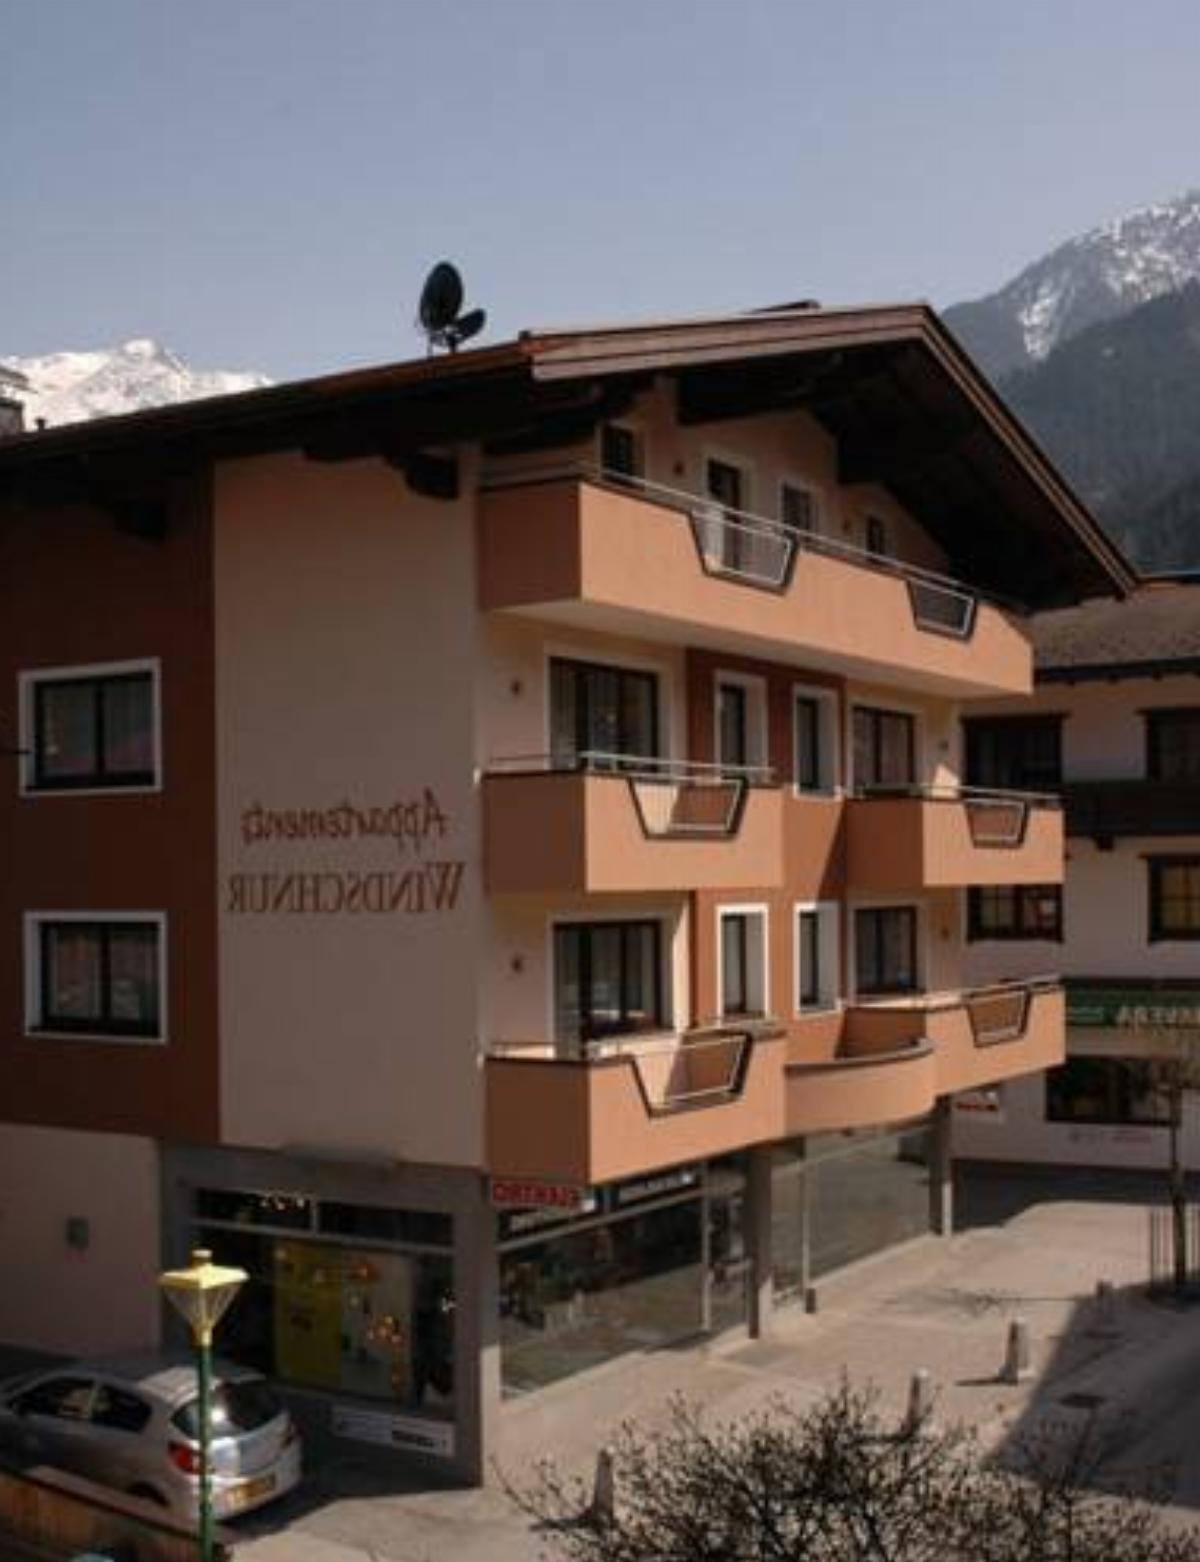 Appartements Windschnur Hotel Mayrhofen Austria